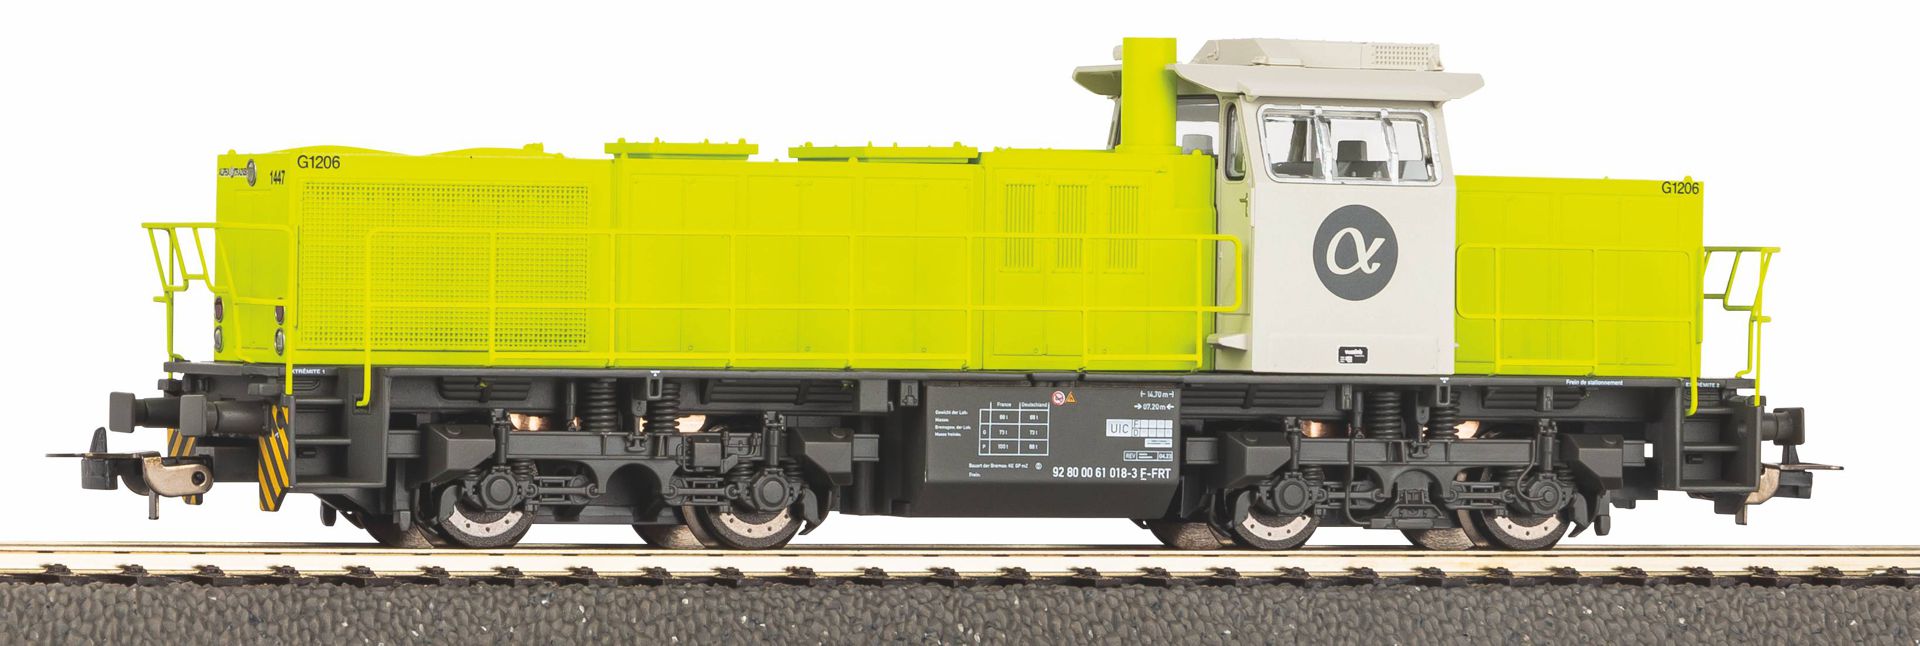 Piko 59166 - Diesellok G 1206, Alpha Trains, Ep.VI, DC-Digital